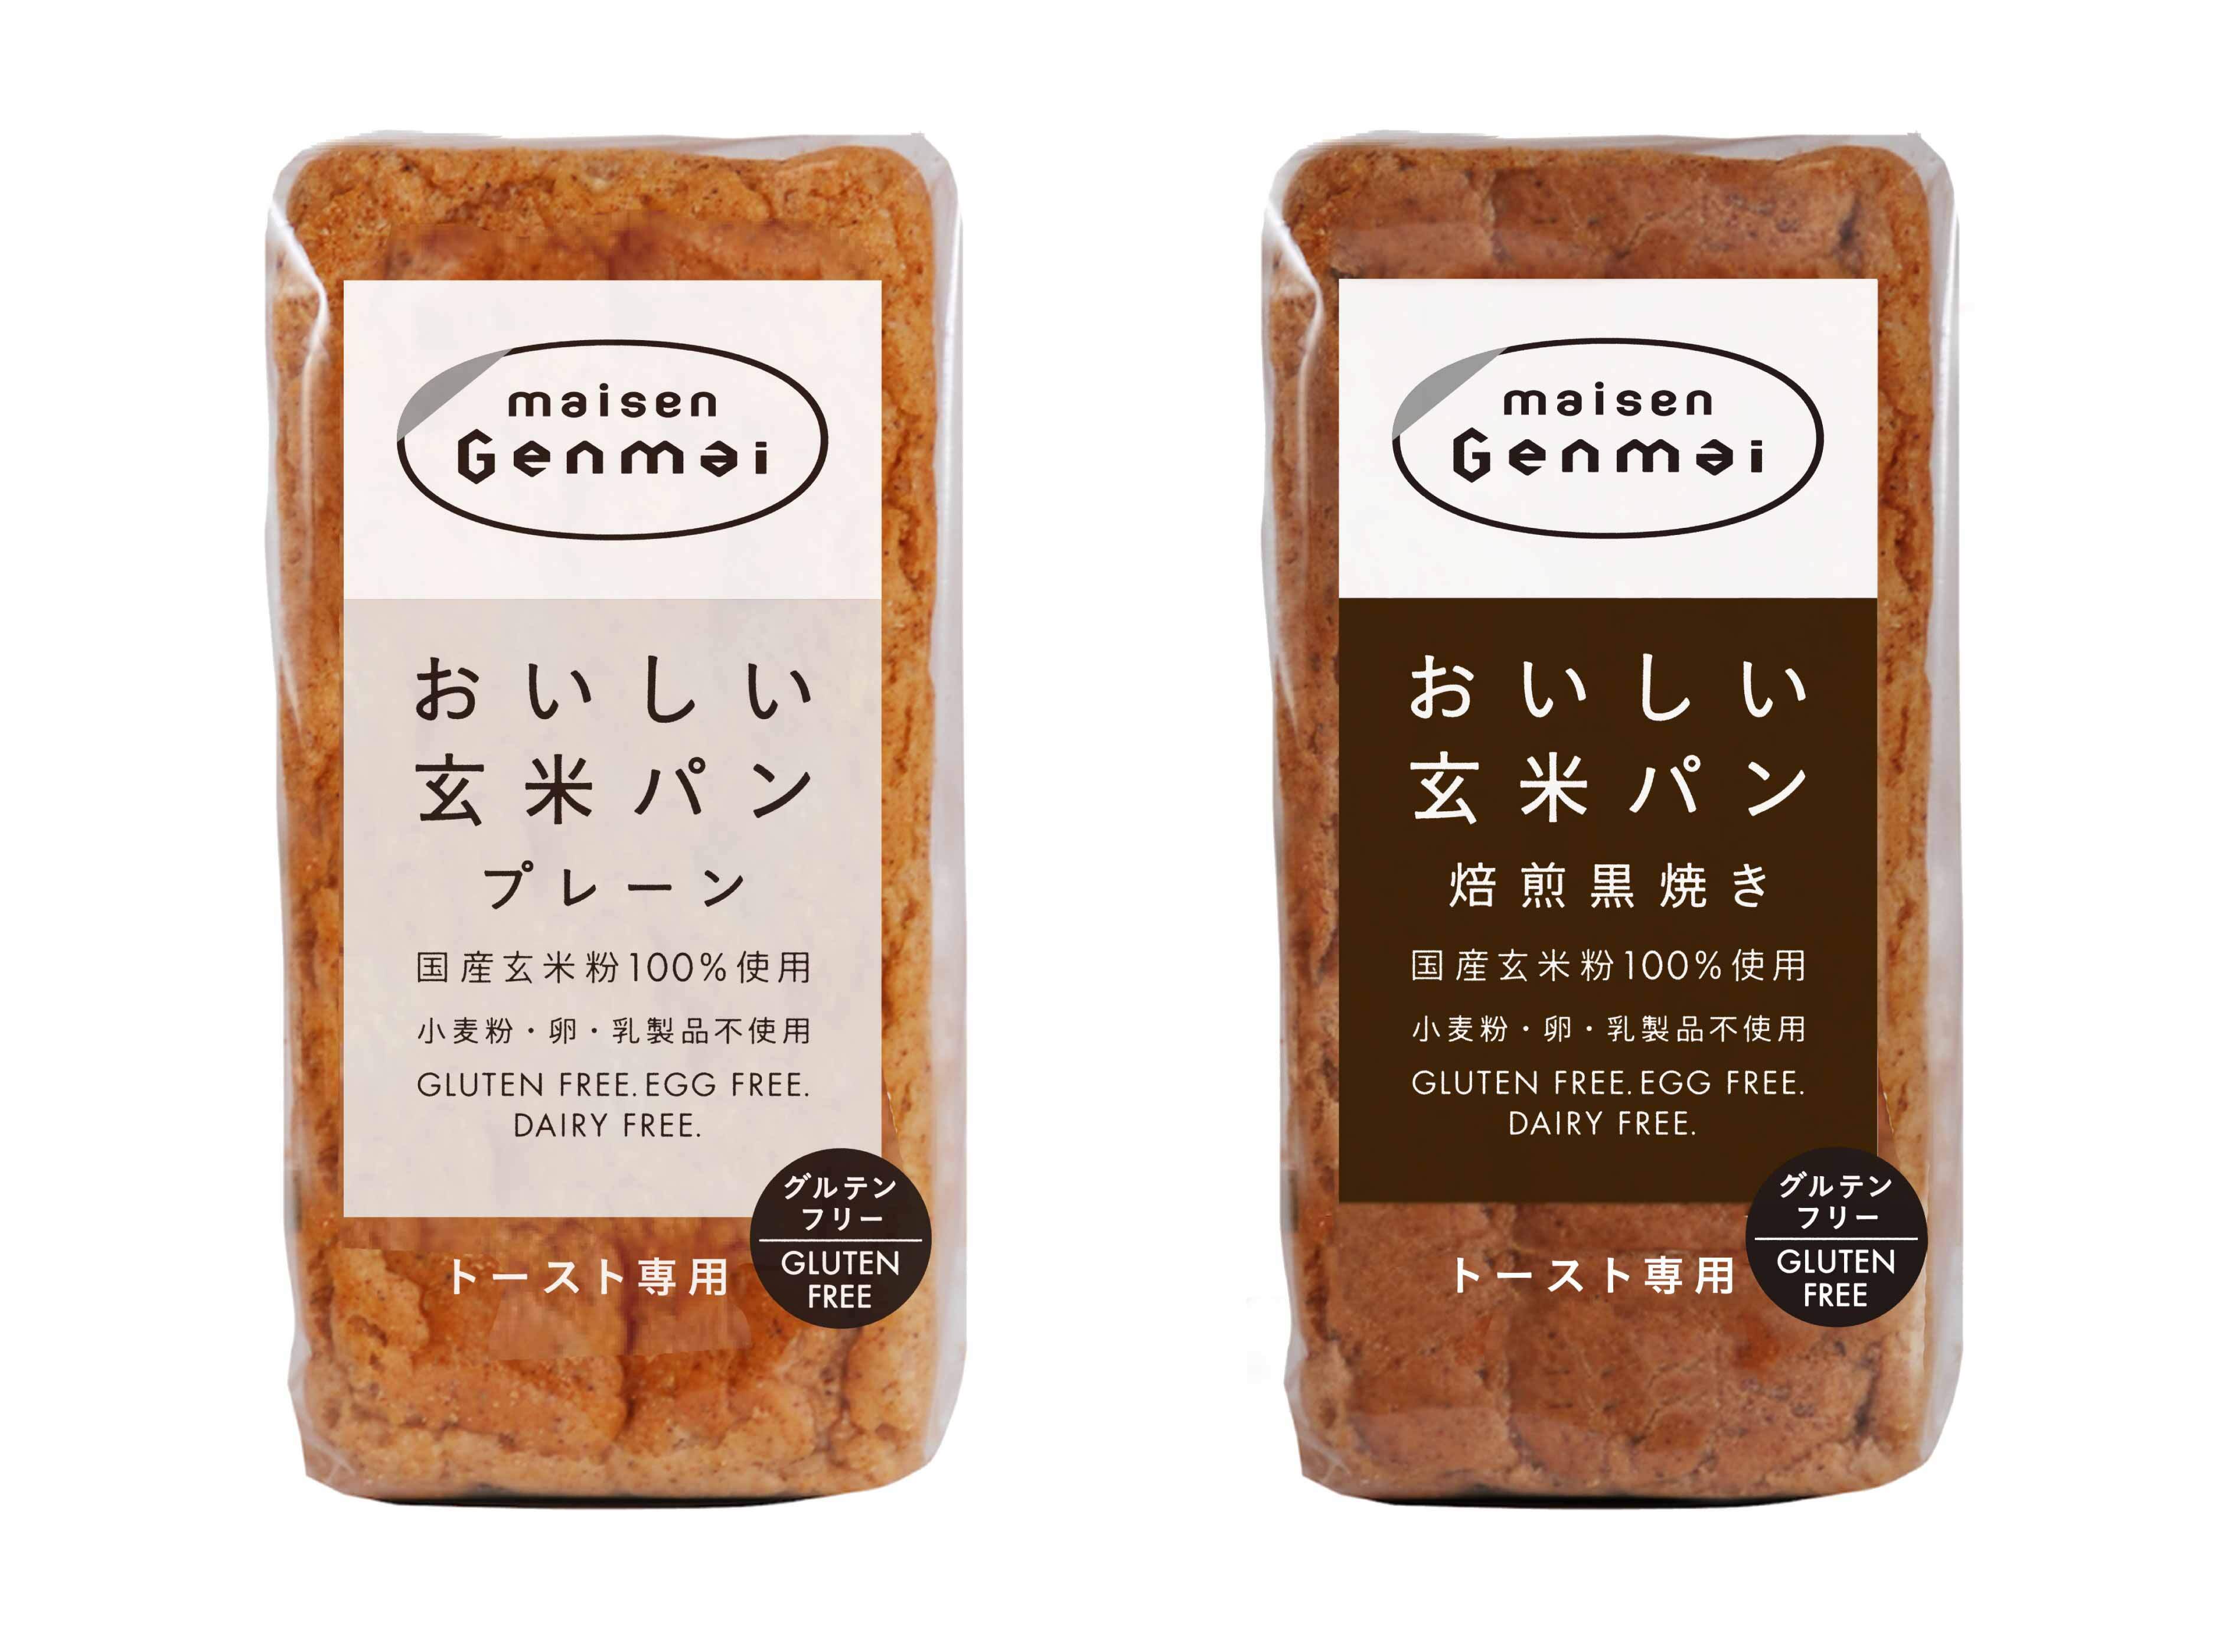 マイセンのグルテンフリー 玄米粉100 使用の 玄米パン おいしい玄米 パン として3月7日リニューアル発売 株式会社マイセンファインフードのプレスリリース